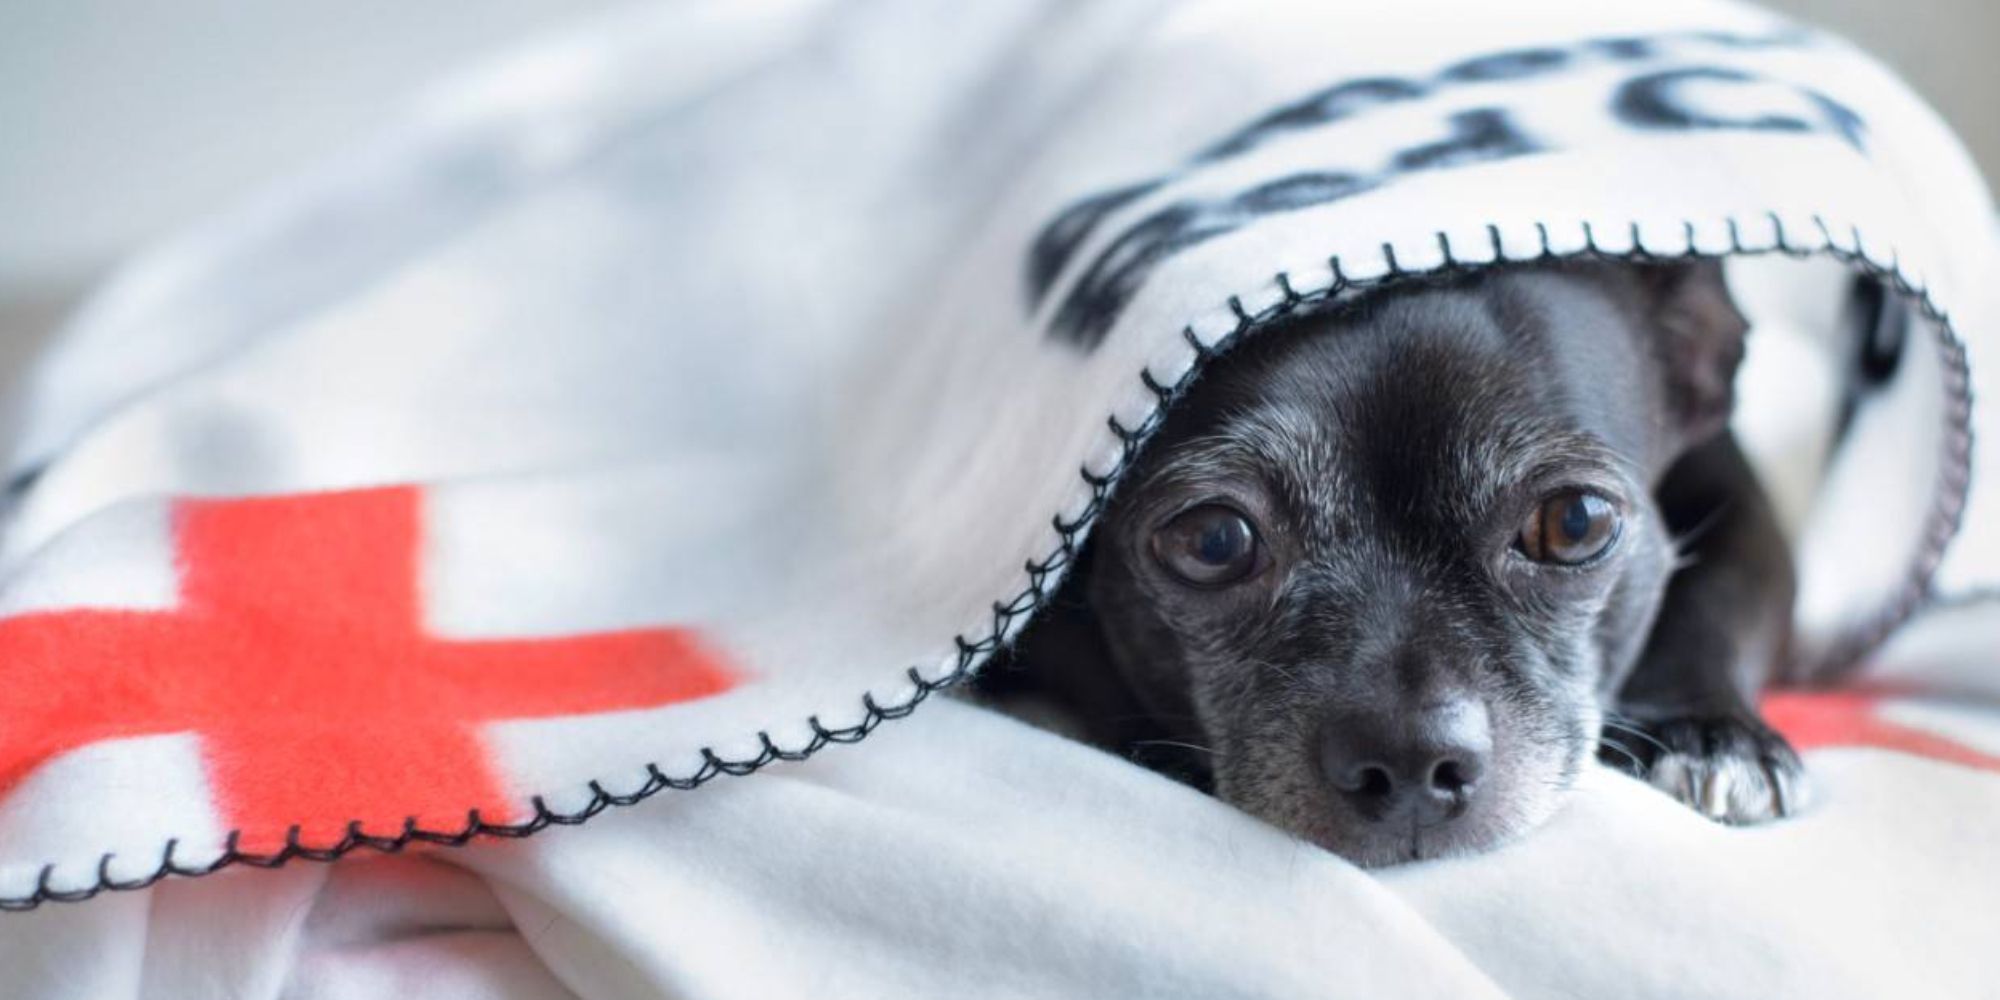 Um pequeno cão preto está sentado debaixo de um cobertor branco com uma cruz vermelha.  O cobertor diz: 